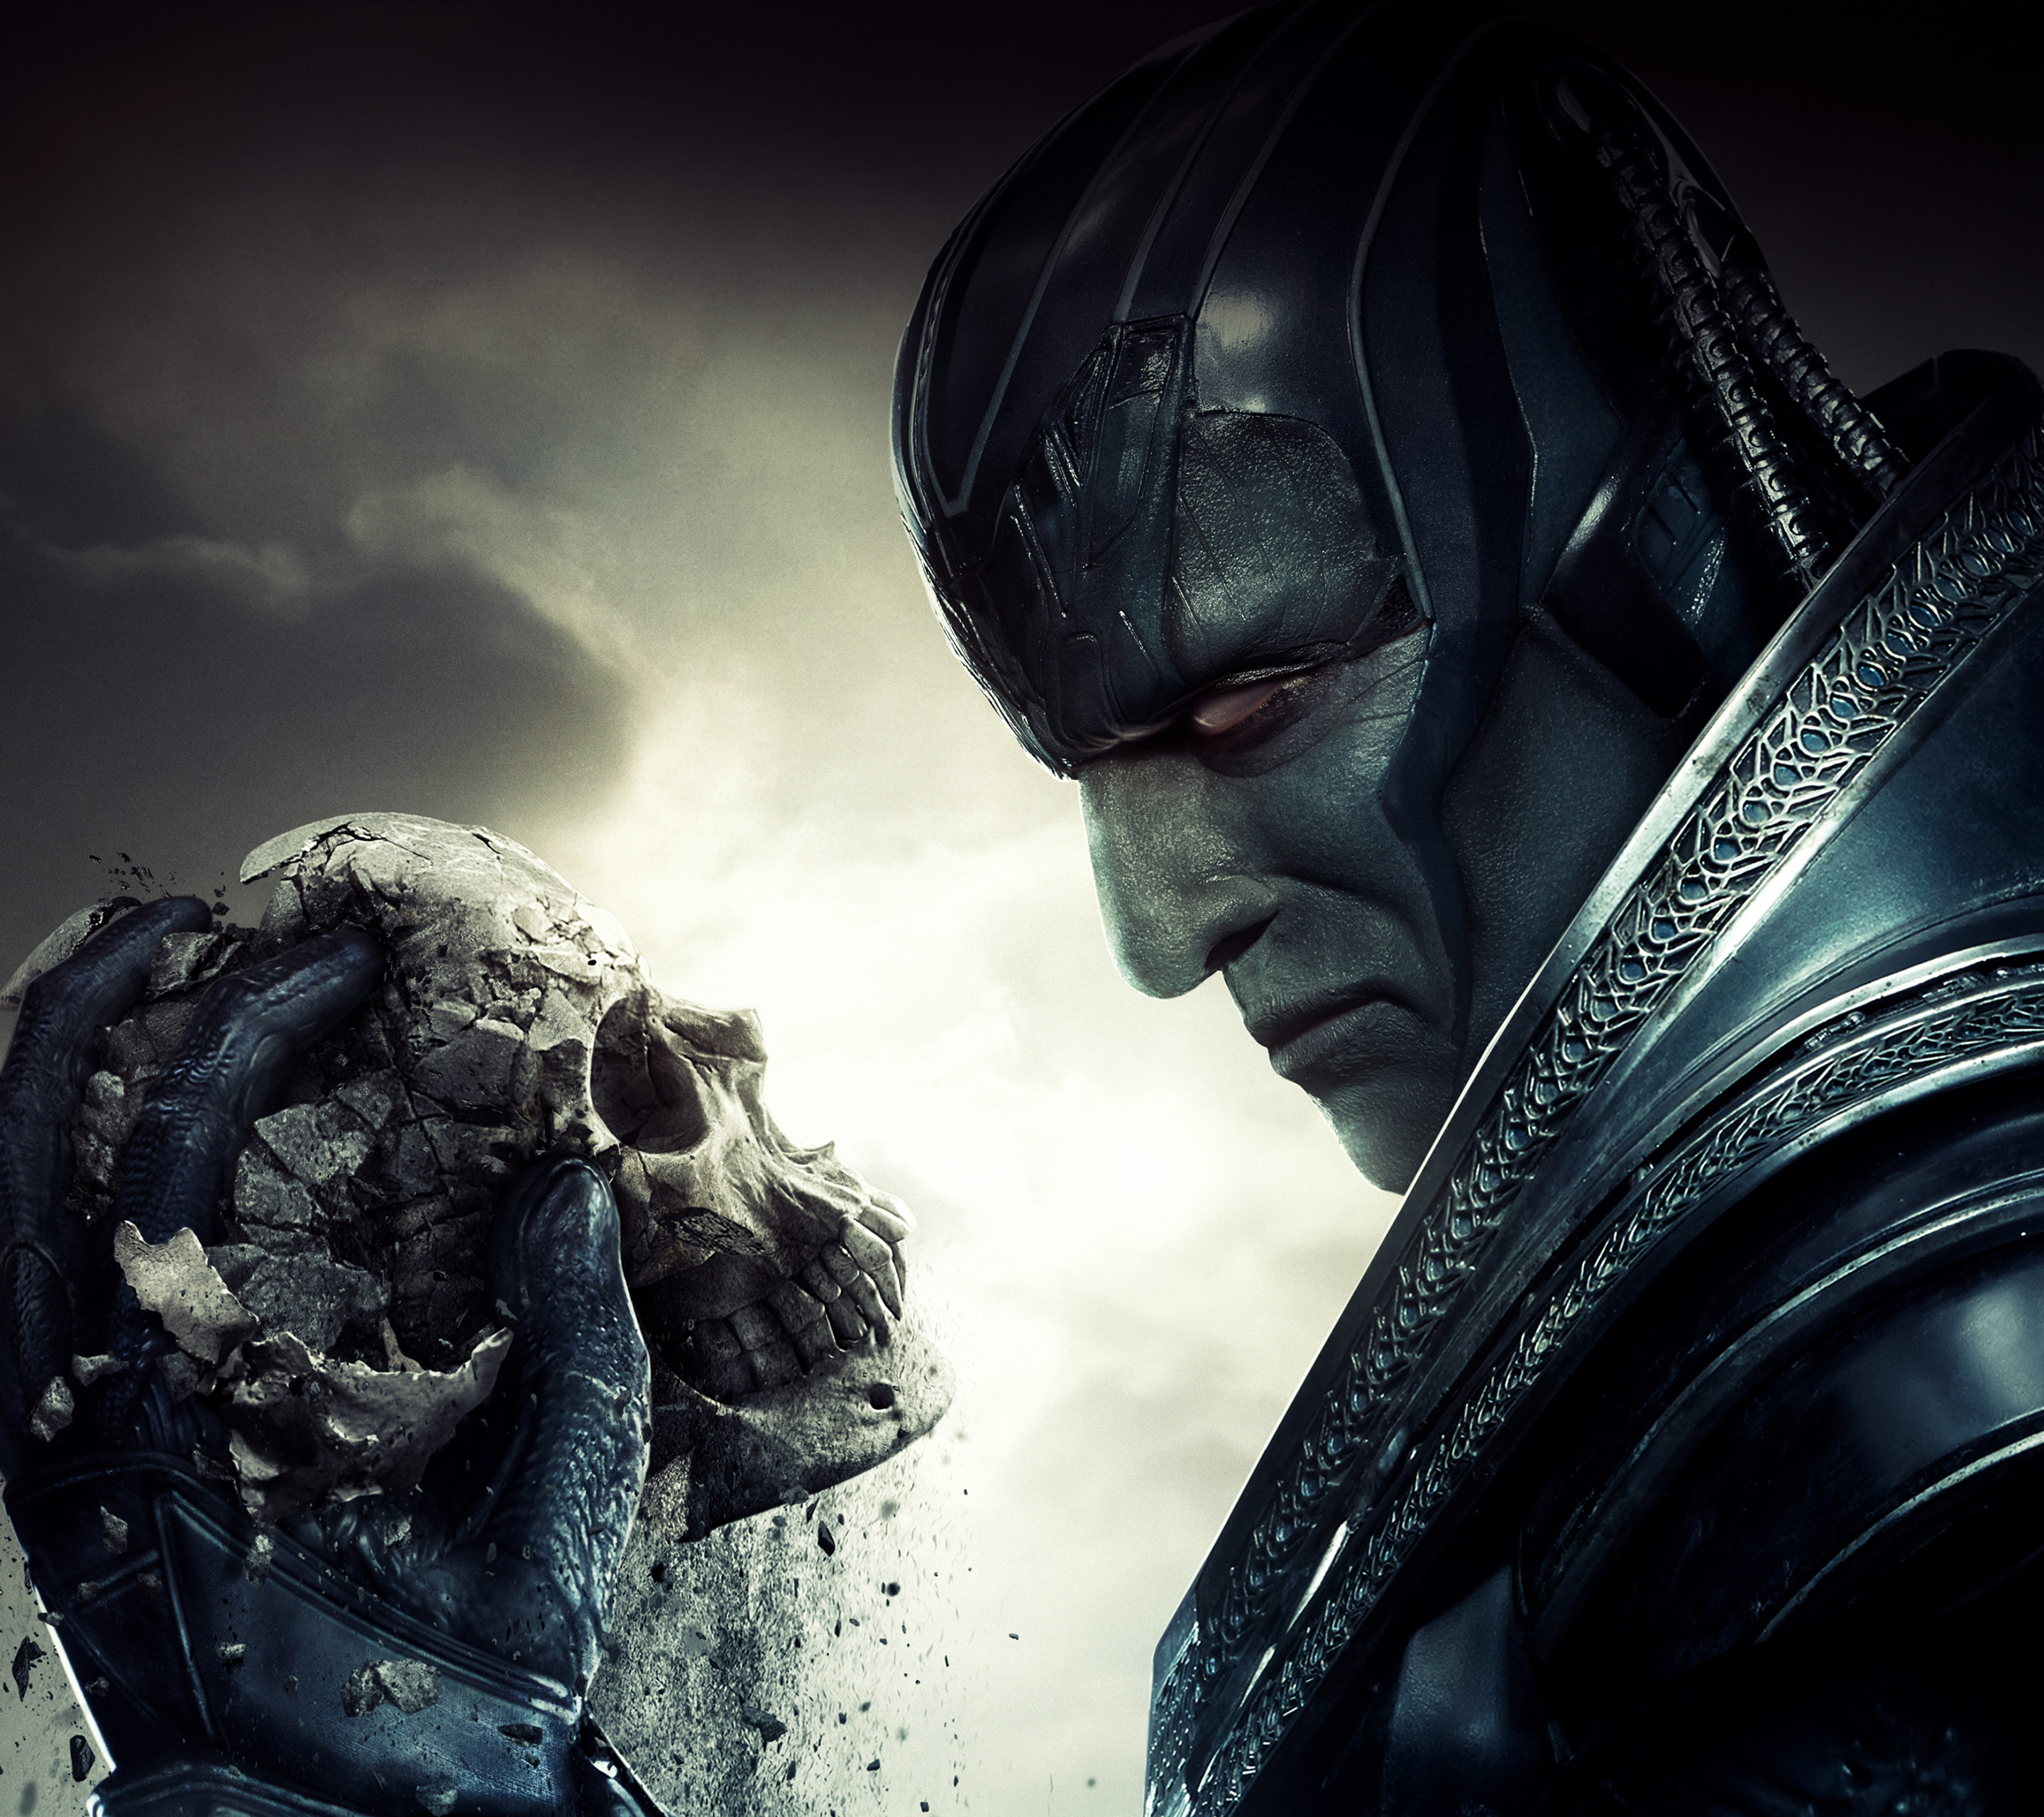 Descarga gratuita de fondo de pantalla para móvil de X Men, Cráneo, Películas, Cráneos, Superhéroe, X Men: Apocalipsis.